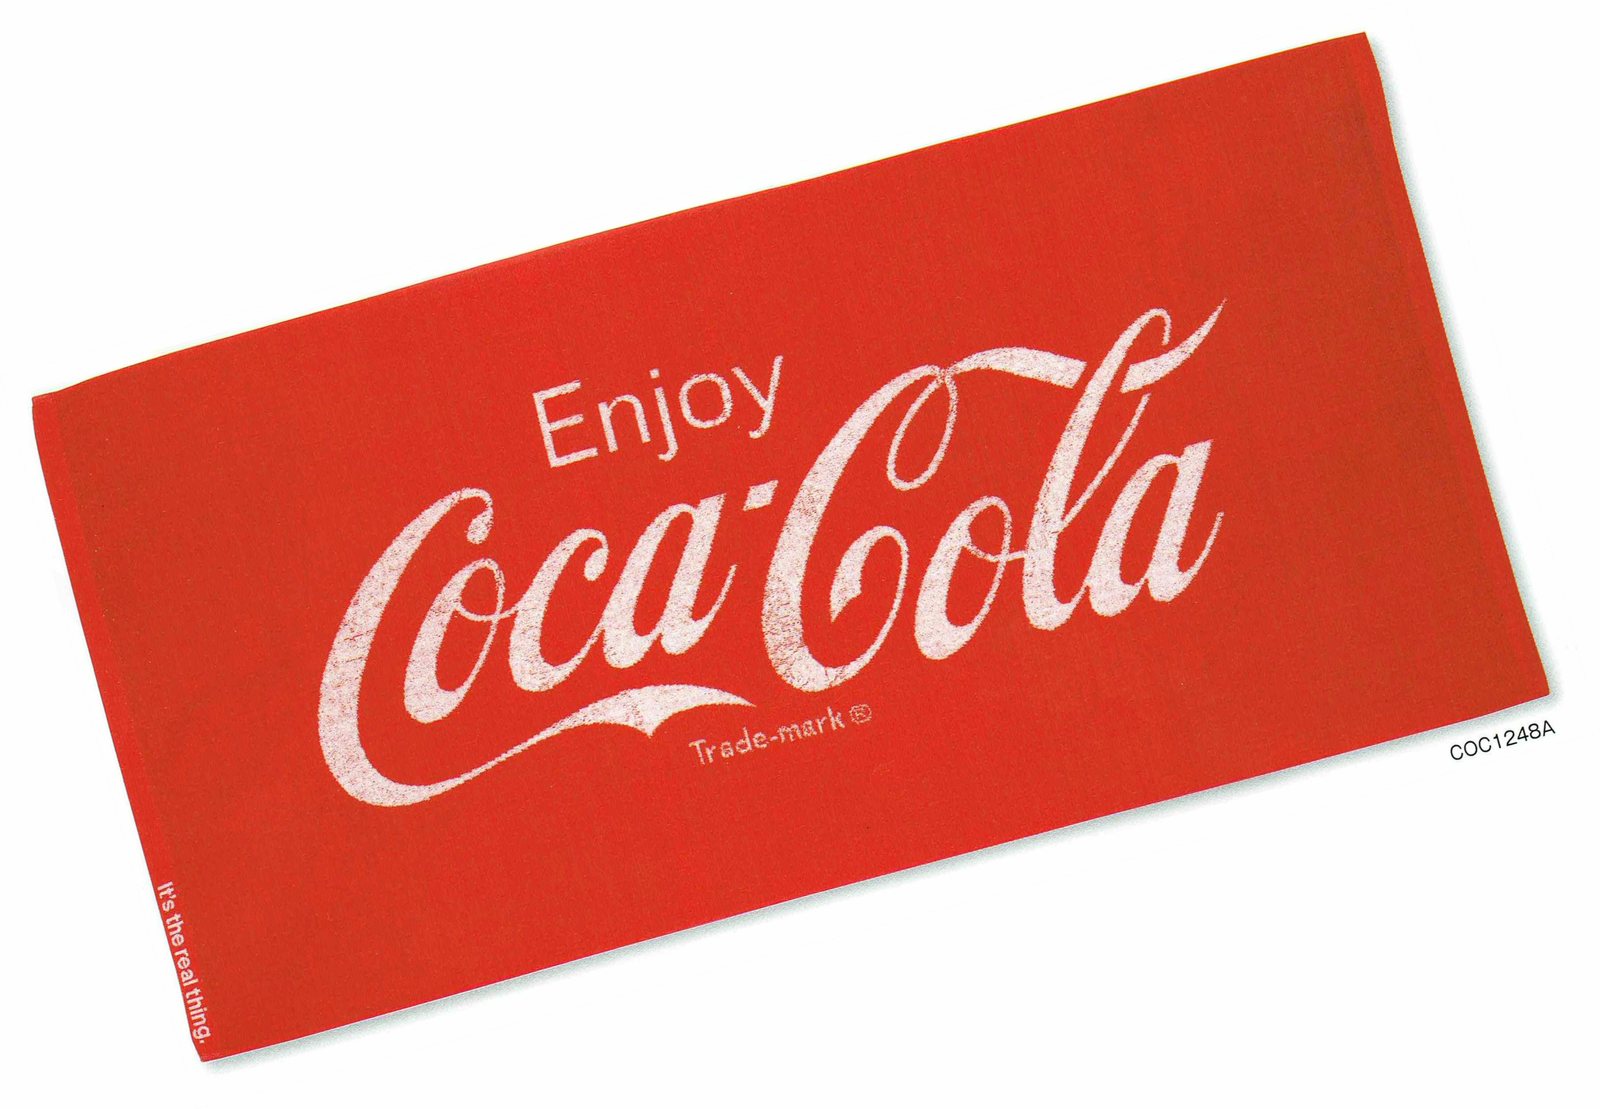 コカ・コーラ バスタオル ジャガード織り レッド 60x120cm 綿100%